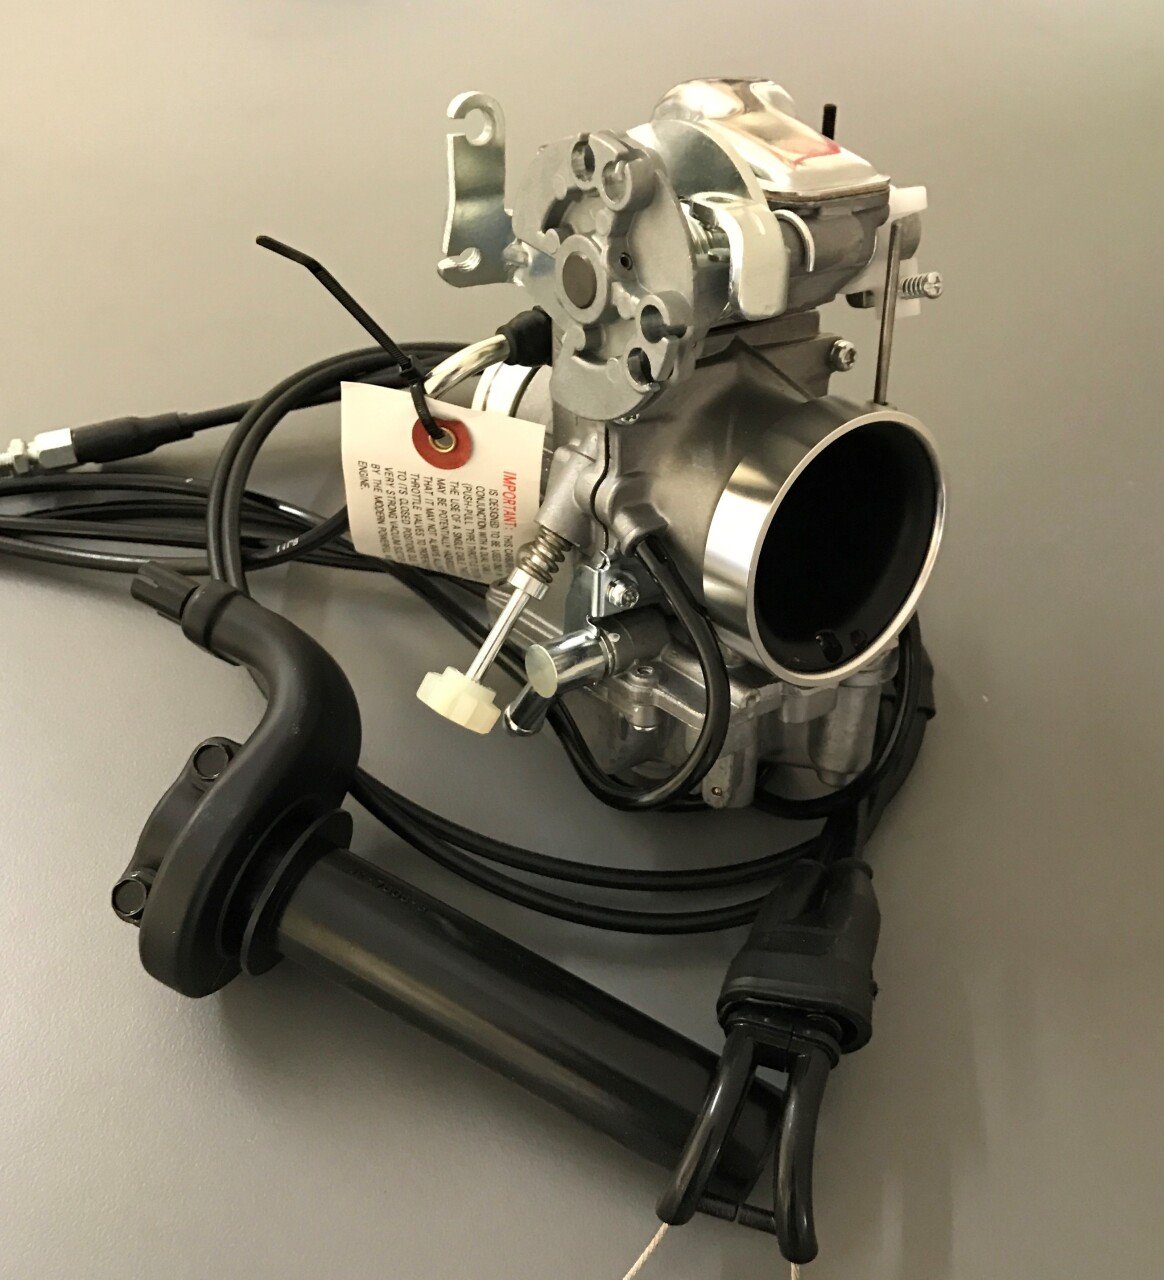 SAVE XR400 Mikuni TM40 Racing/Enduro Carburetor Kit incl. Throttle Assembly